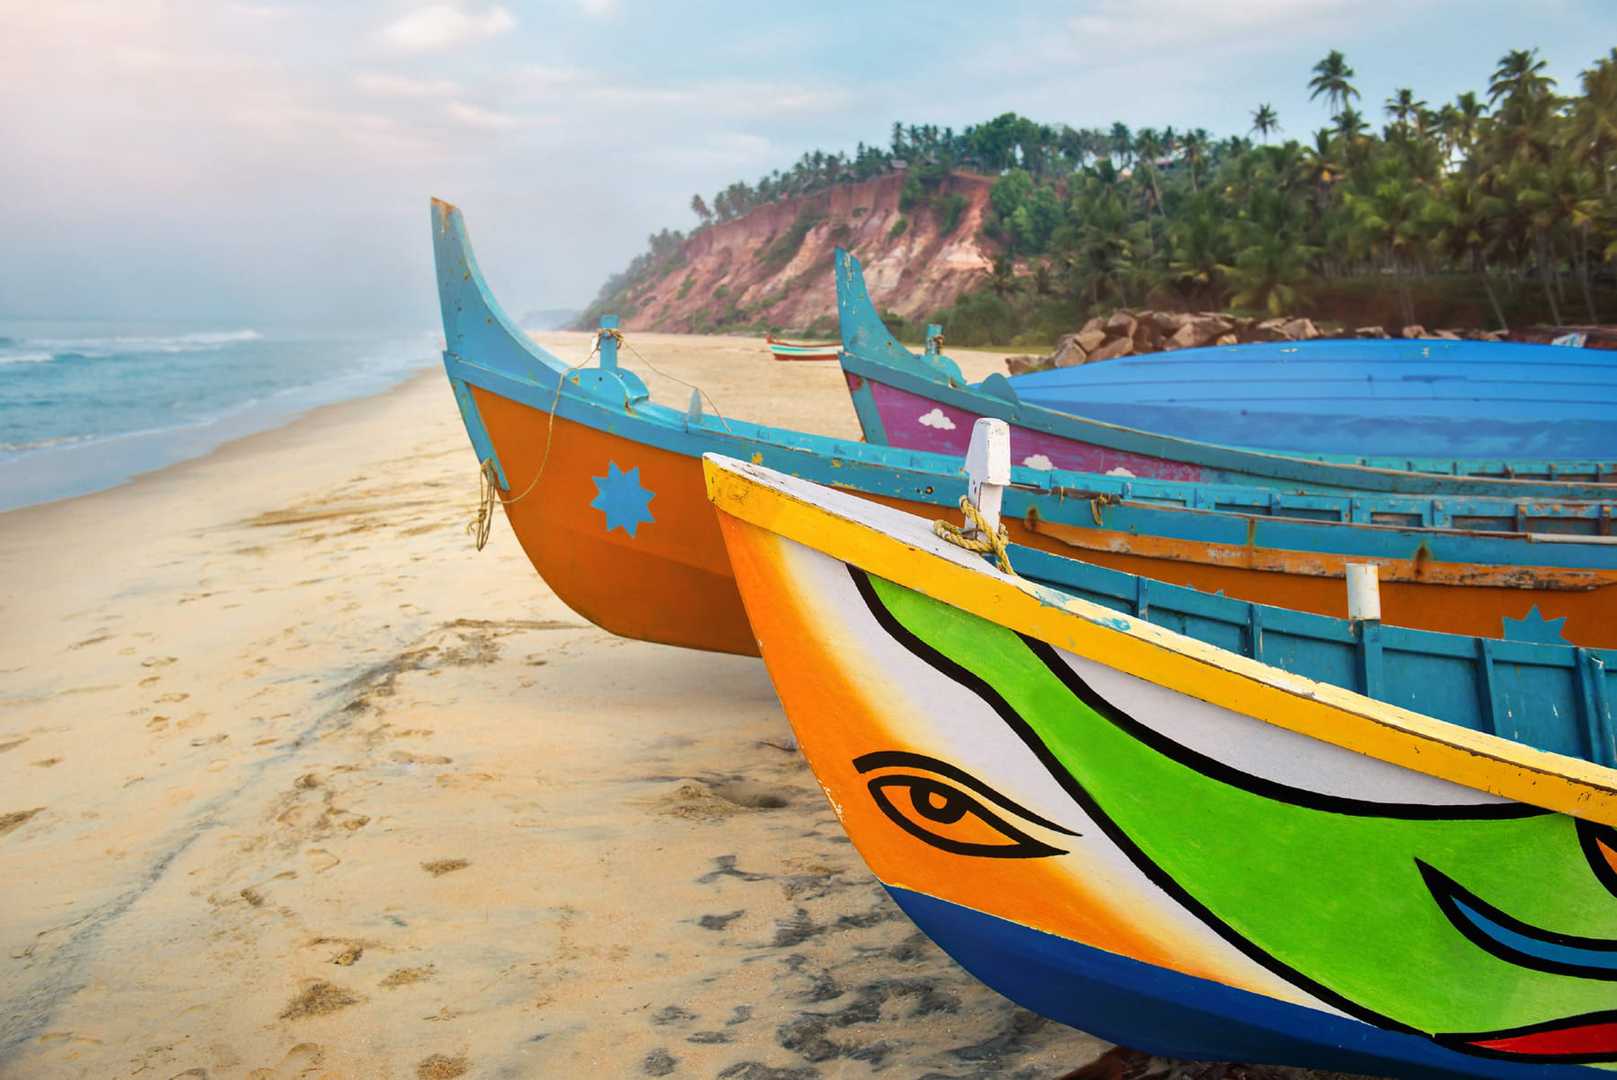 Radreise Indien Kerala - bunte Fischerboote am Strand